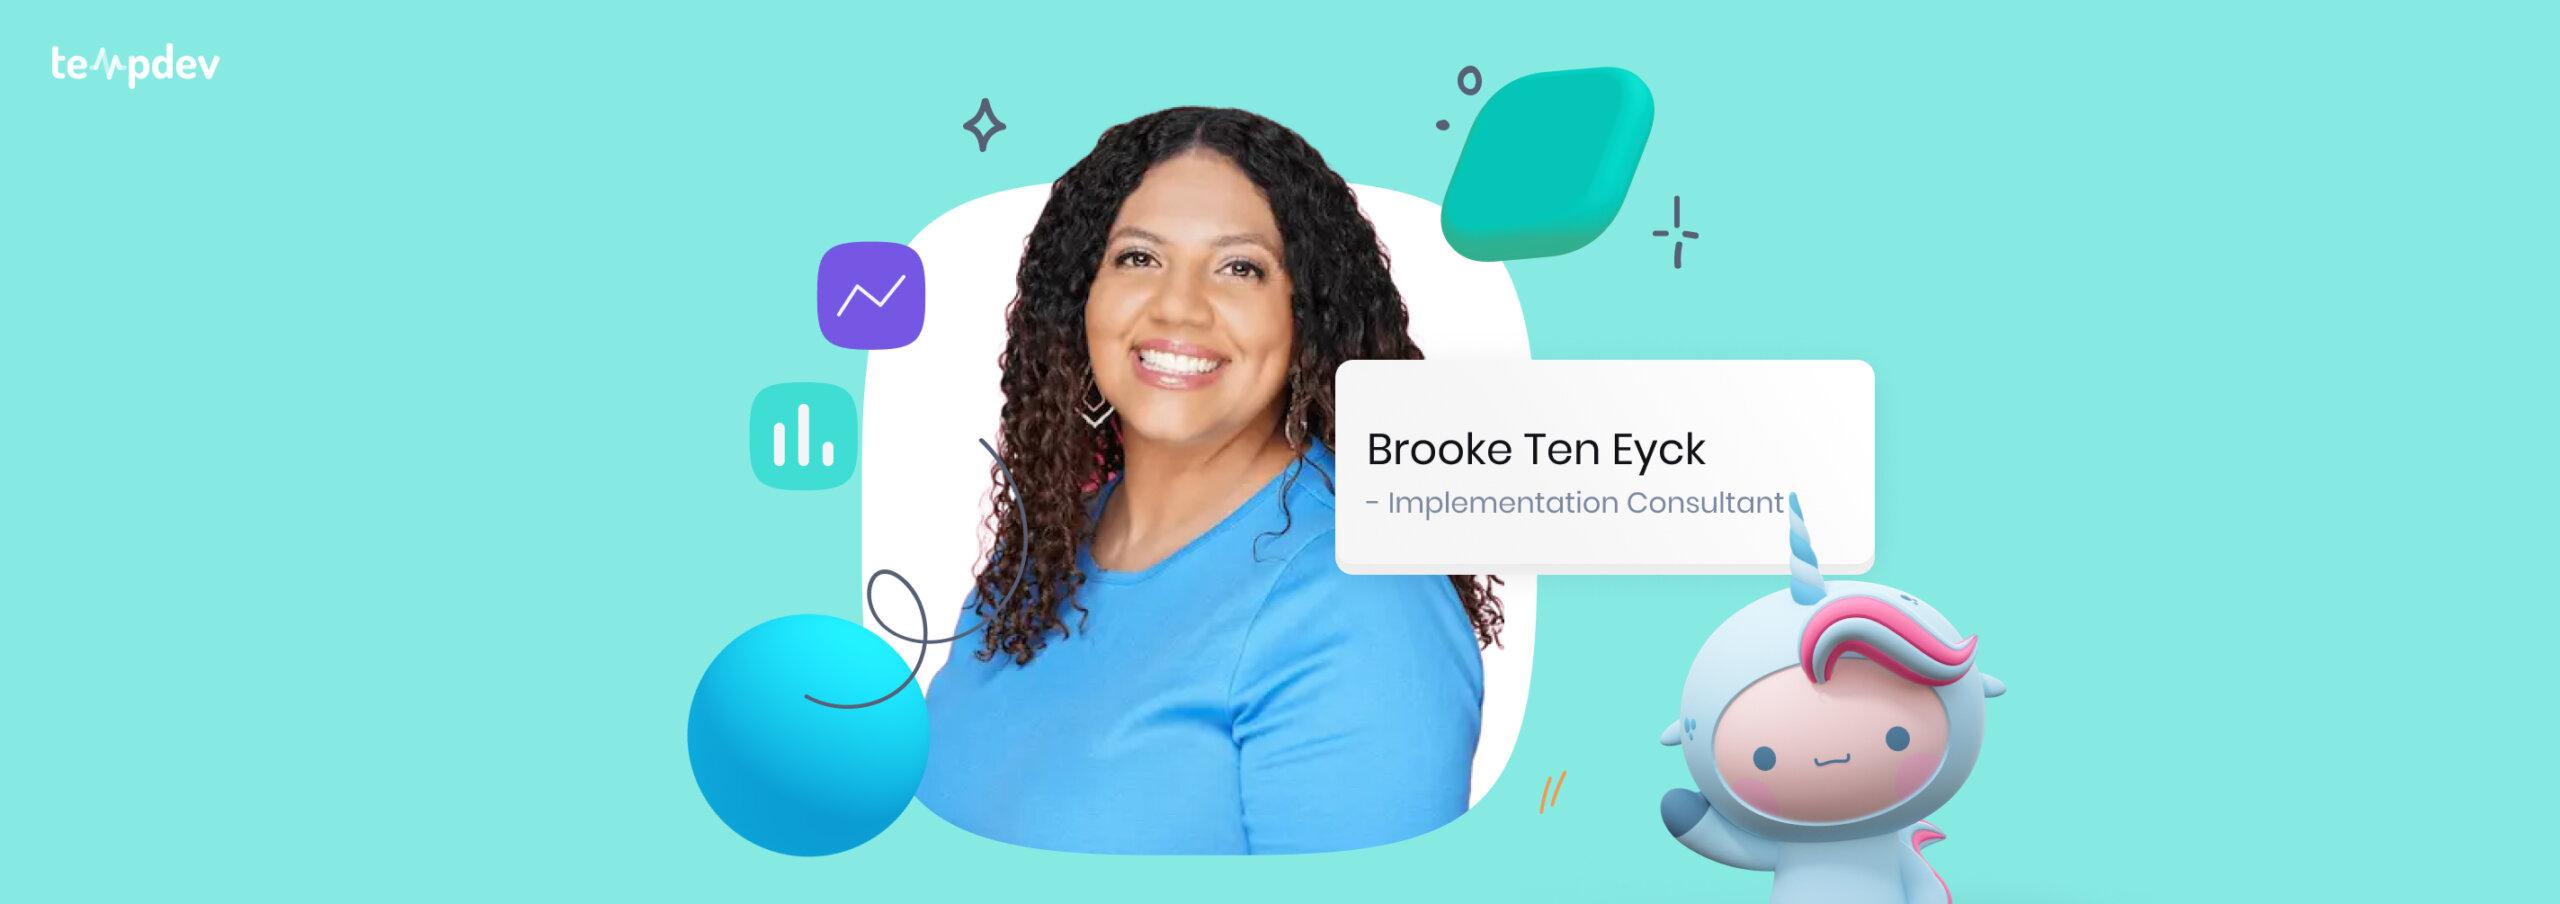 Meet Brooke Ten Eyck: NextGen Implementation Consultant